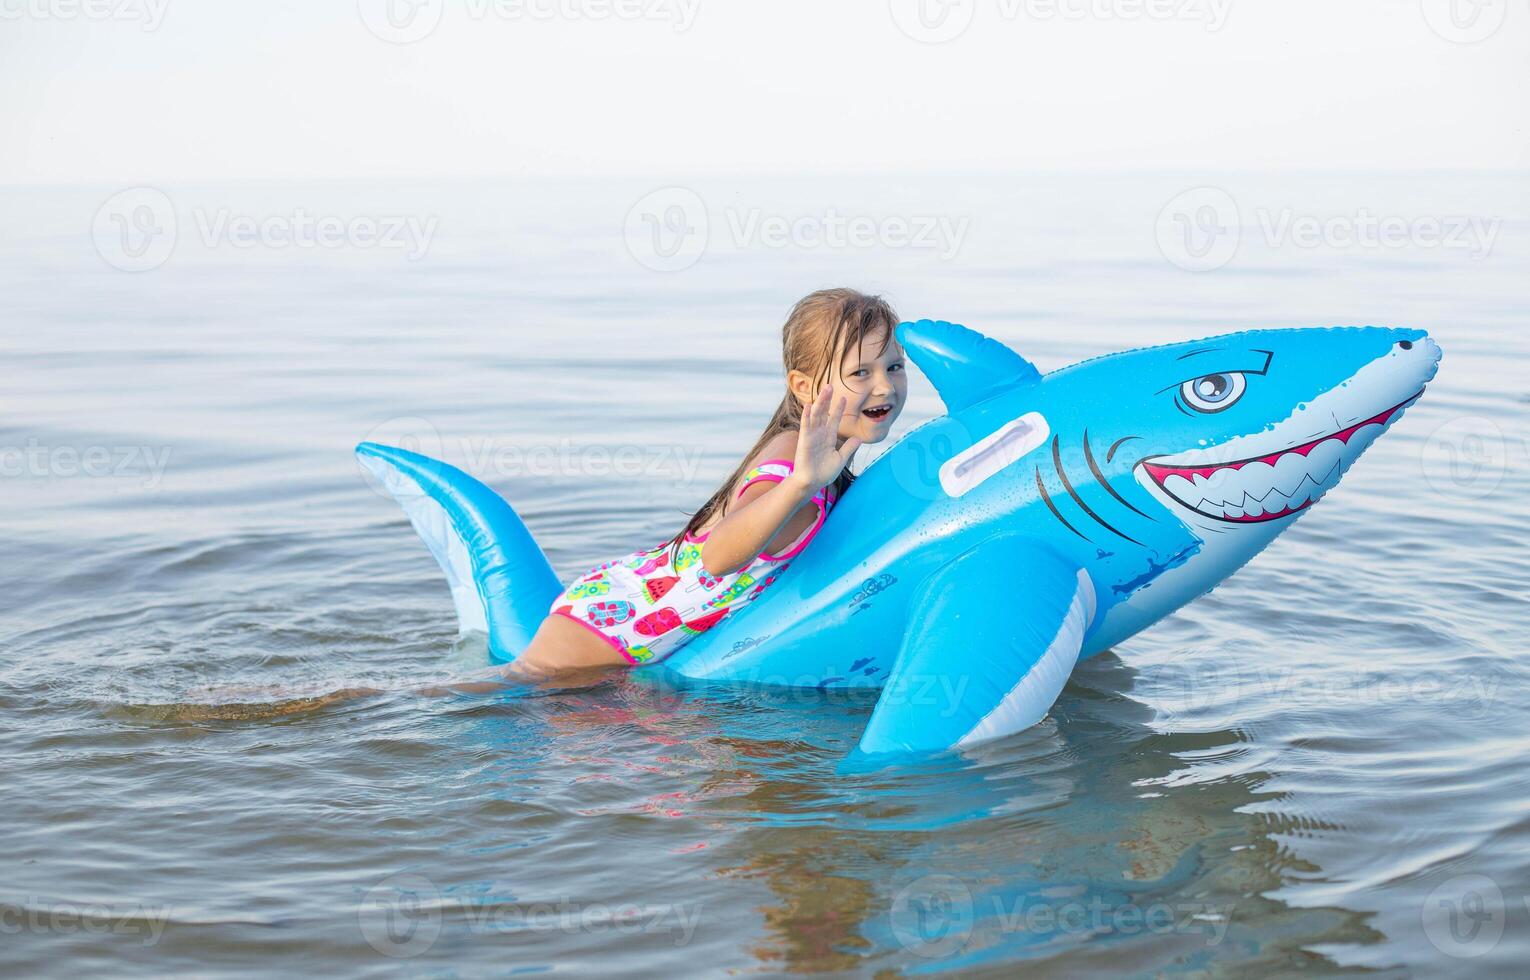 glücklich Mädchen von europäisch Aussehen Alter von 7 Schwimmen auf ein aufblasbar groß Hai Spielzeug im das Meer.Familie Sommer- Berufung Konzept. foto